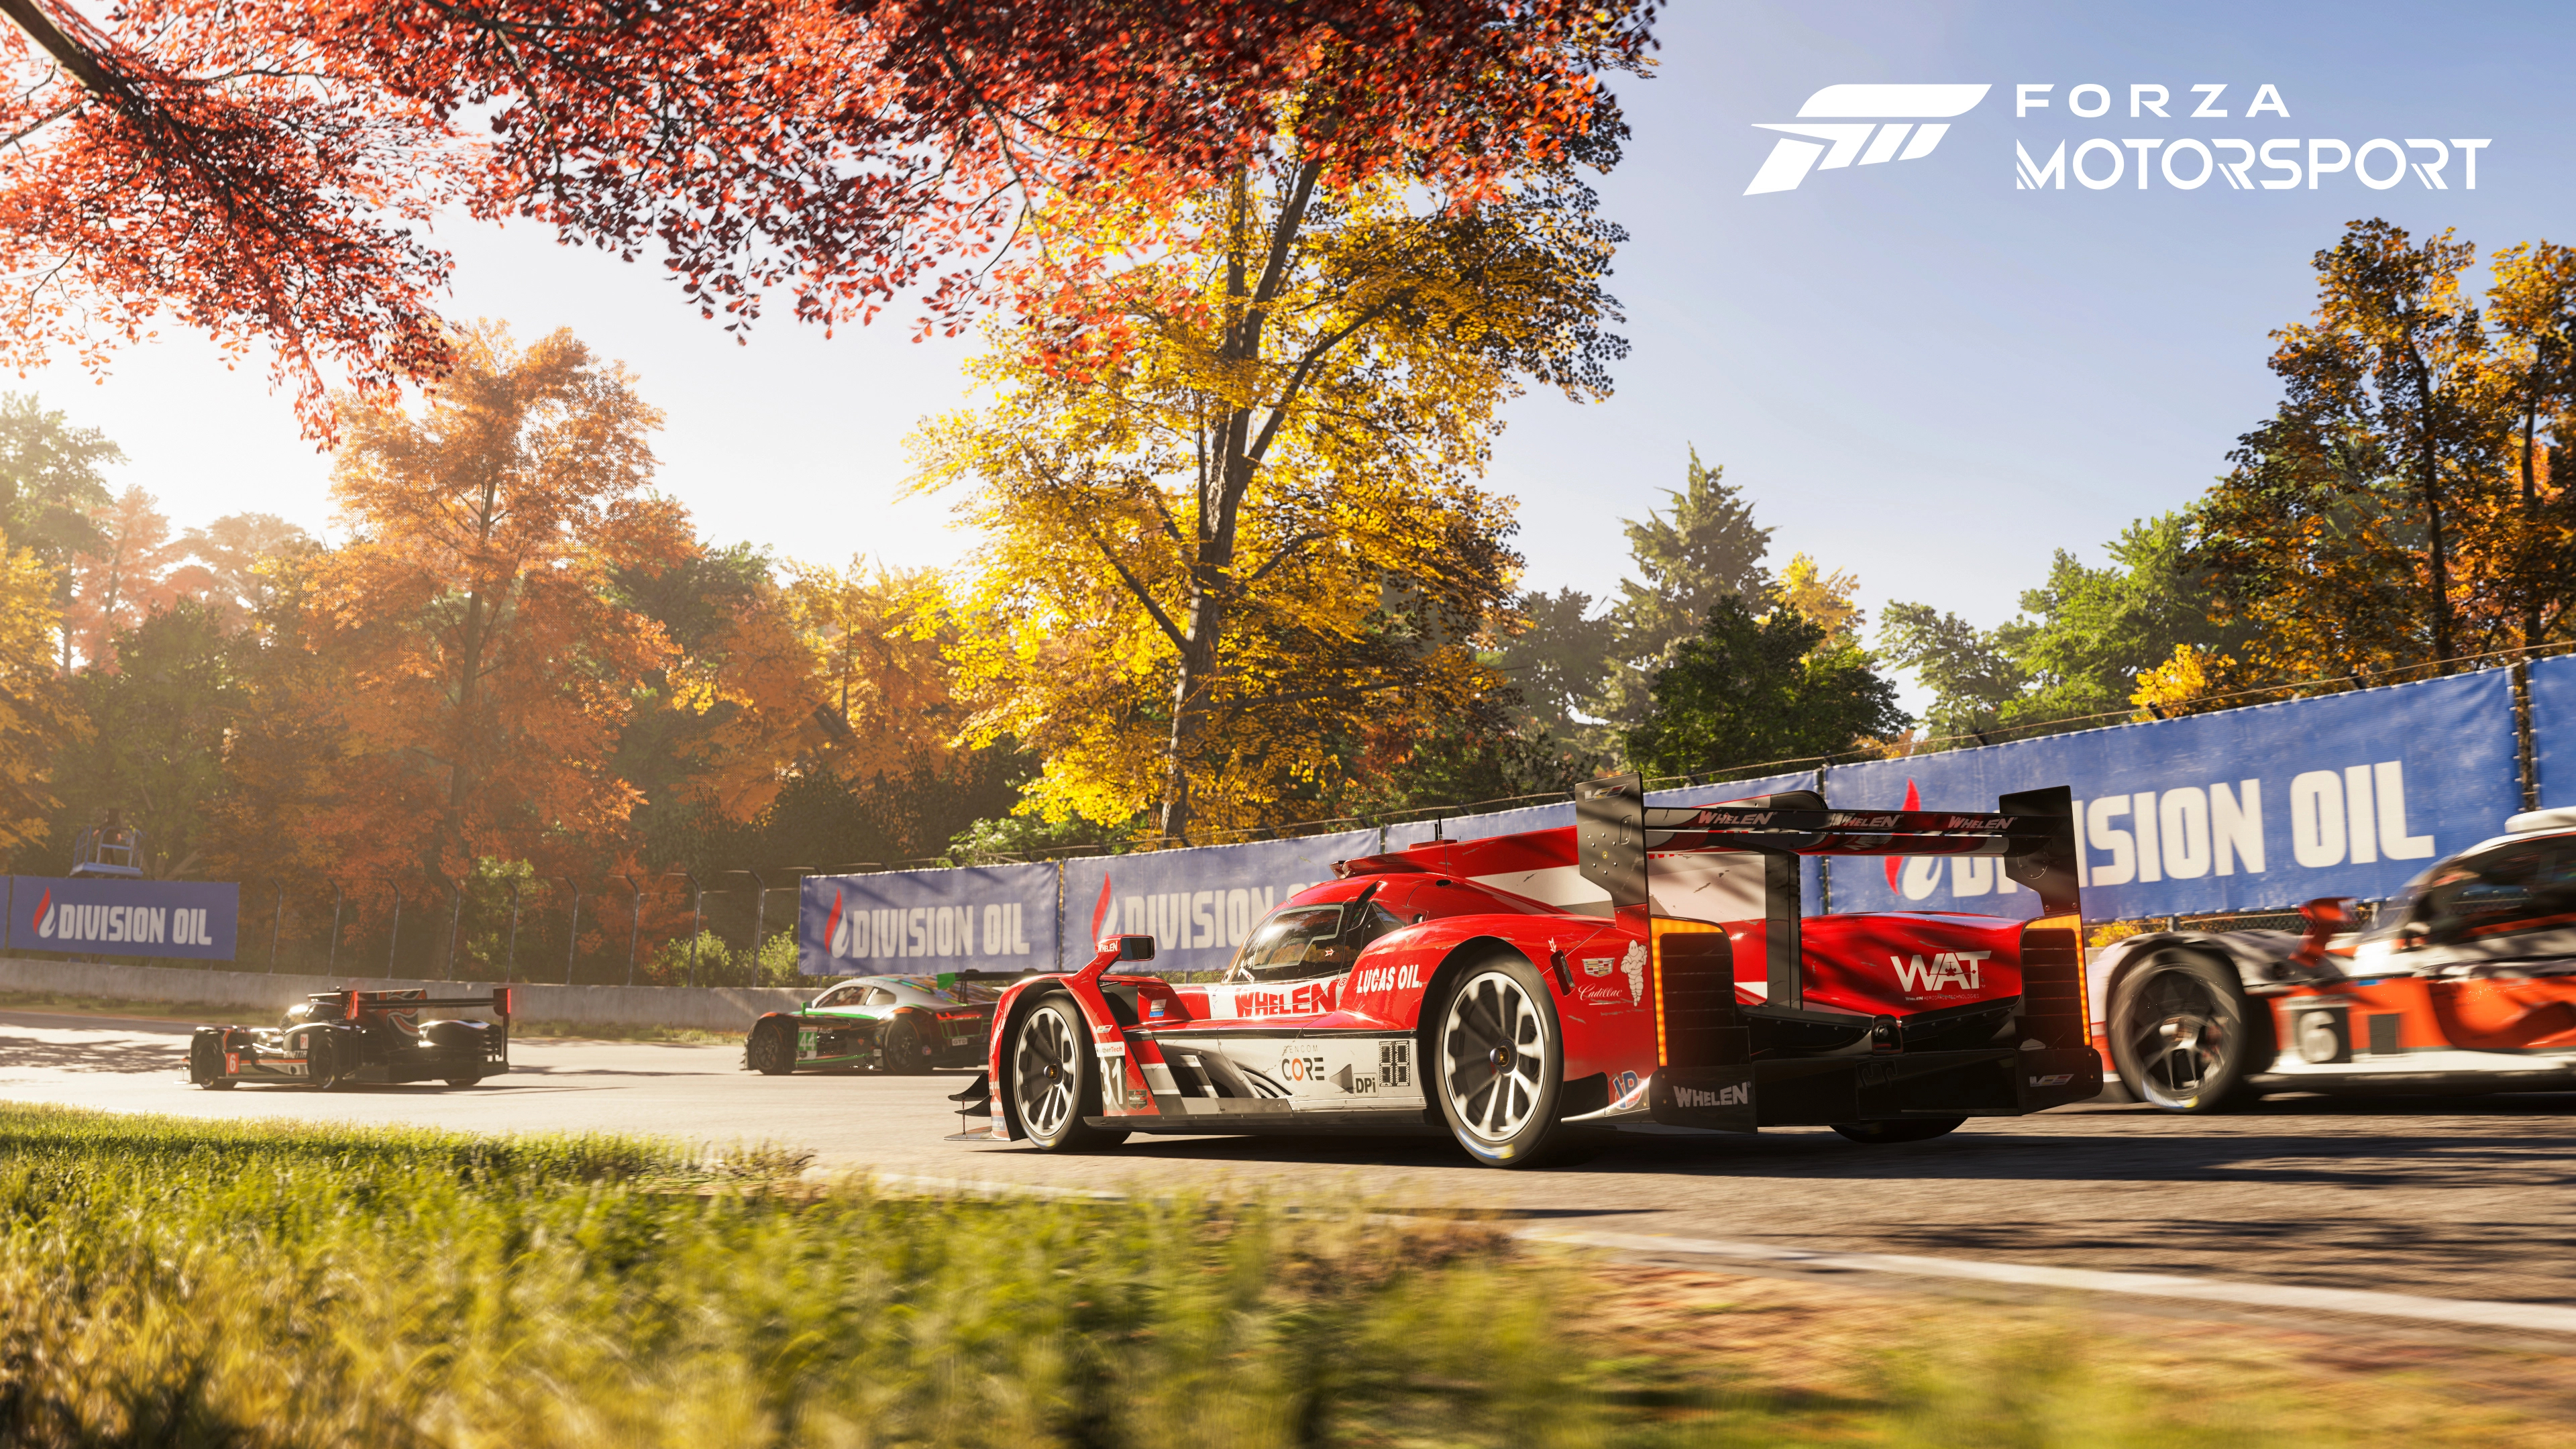 Forza Motorsport 4k Ultra HD Wallpaper